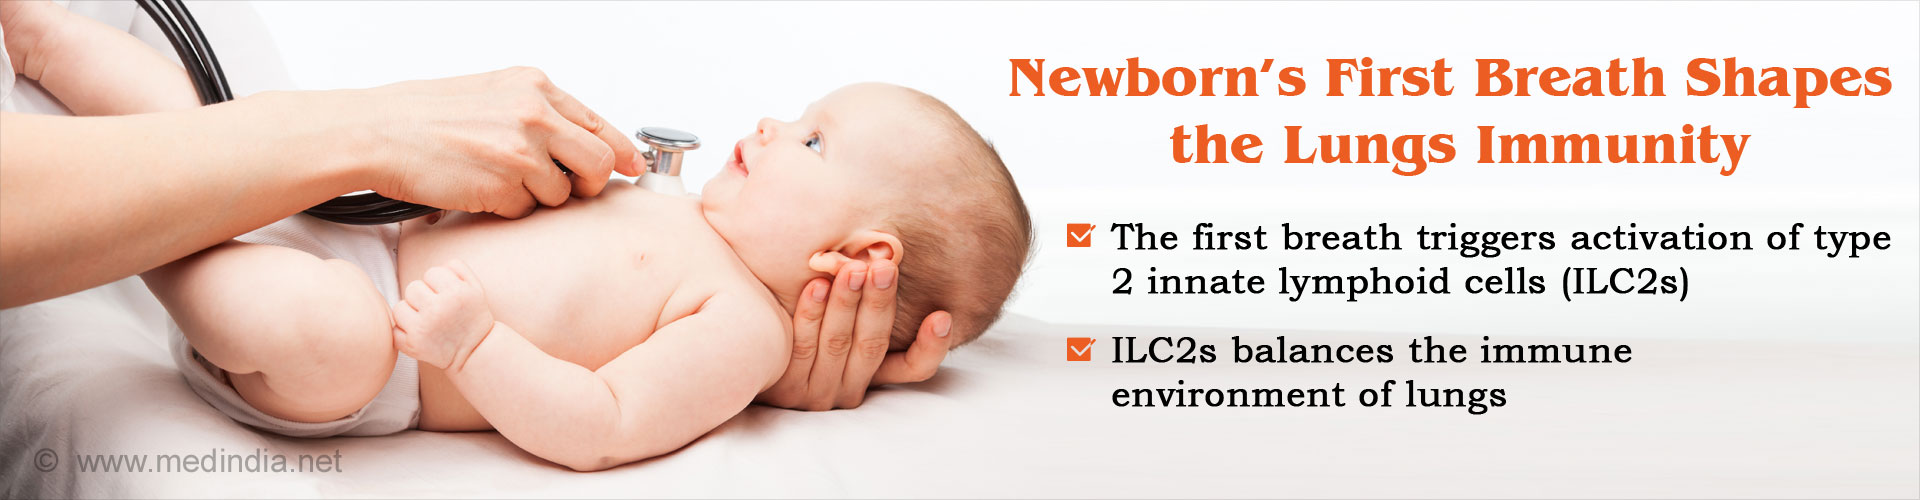 新生儿的第一次呼吸形状肺部免疫- 2型的第一次呼吸触发激活先天淋巴细胞(ILC2s)——ILC2s平衡免疫环境的肺